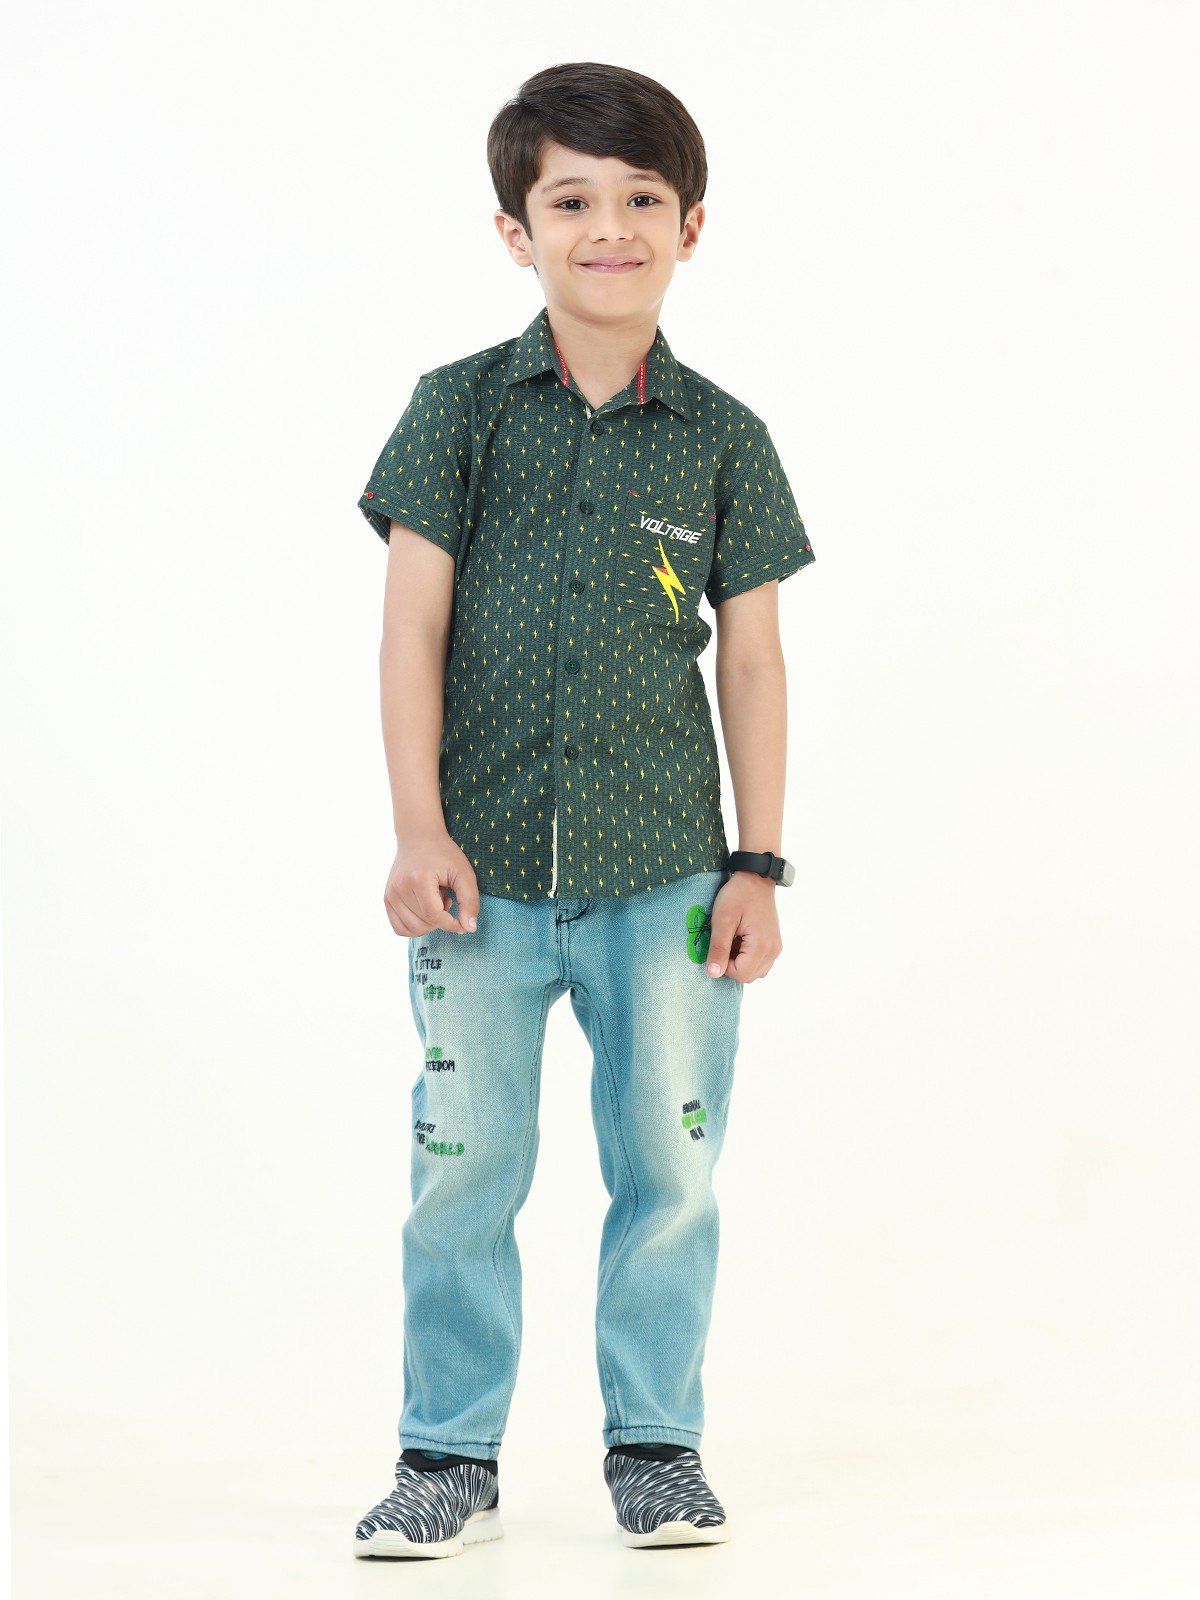 Boy's Green Shirt - EBTS22-27396